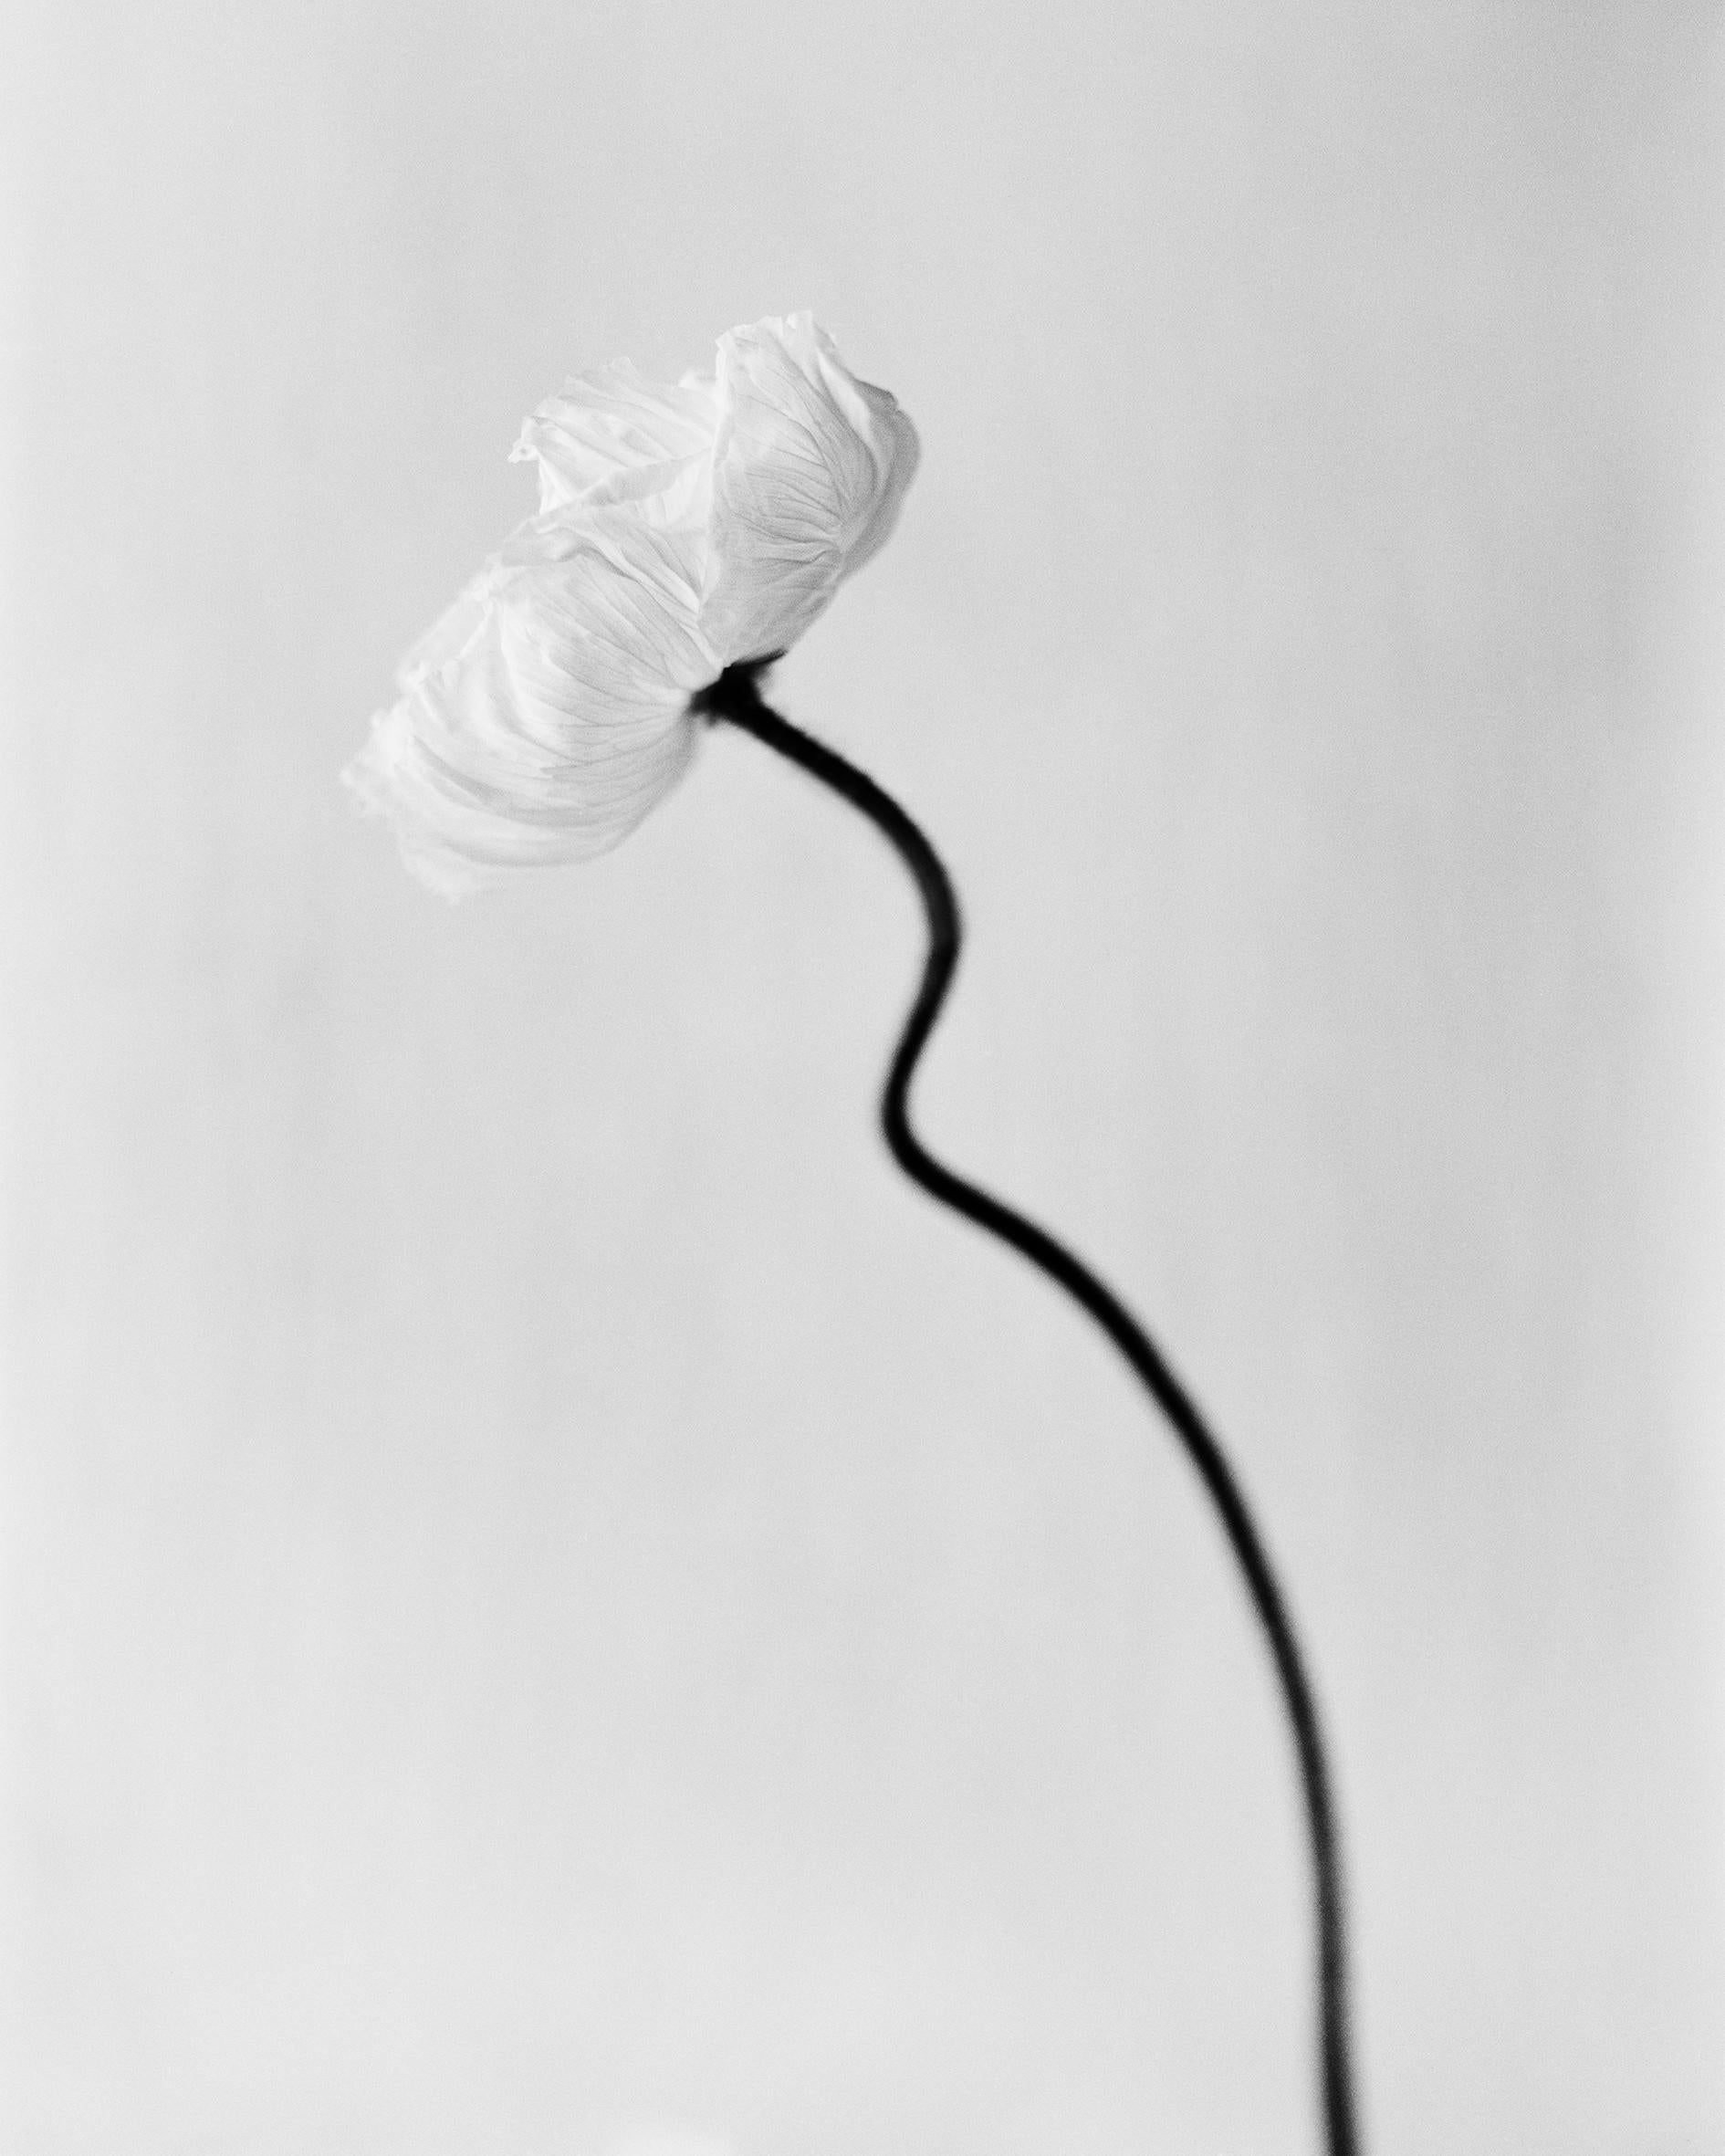 Ugne Pouwell Still-Life Photograph – ppy bloom – Schwarz-Weiß- analoge Blumenfotografie in Schwarz-Weiß, limitierte Auflage von 10 Stück